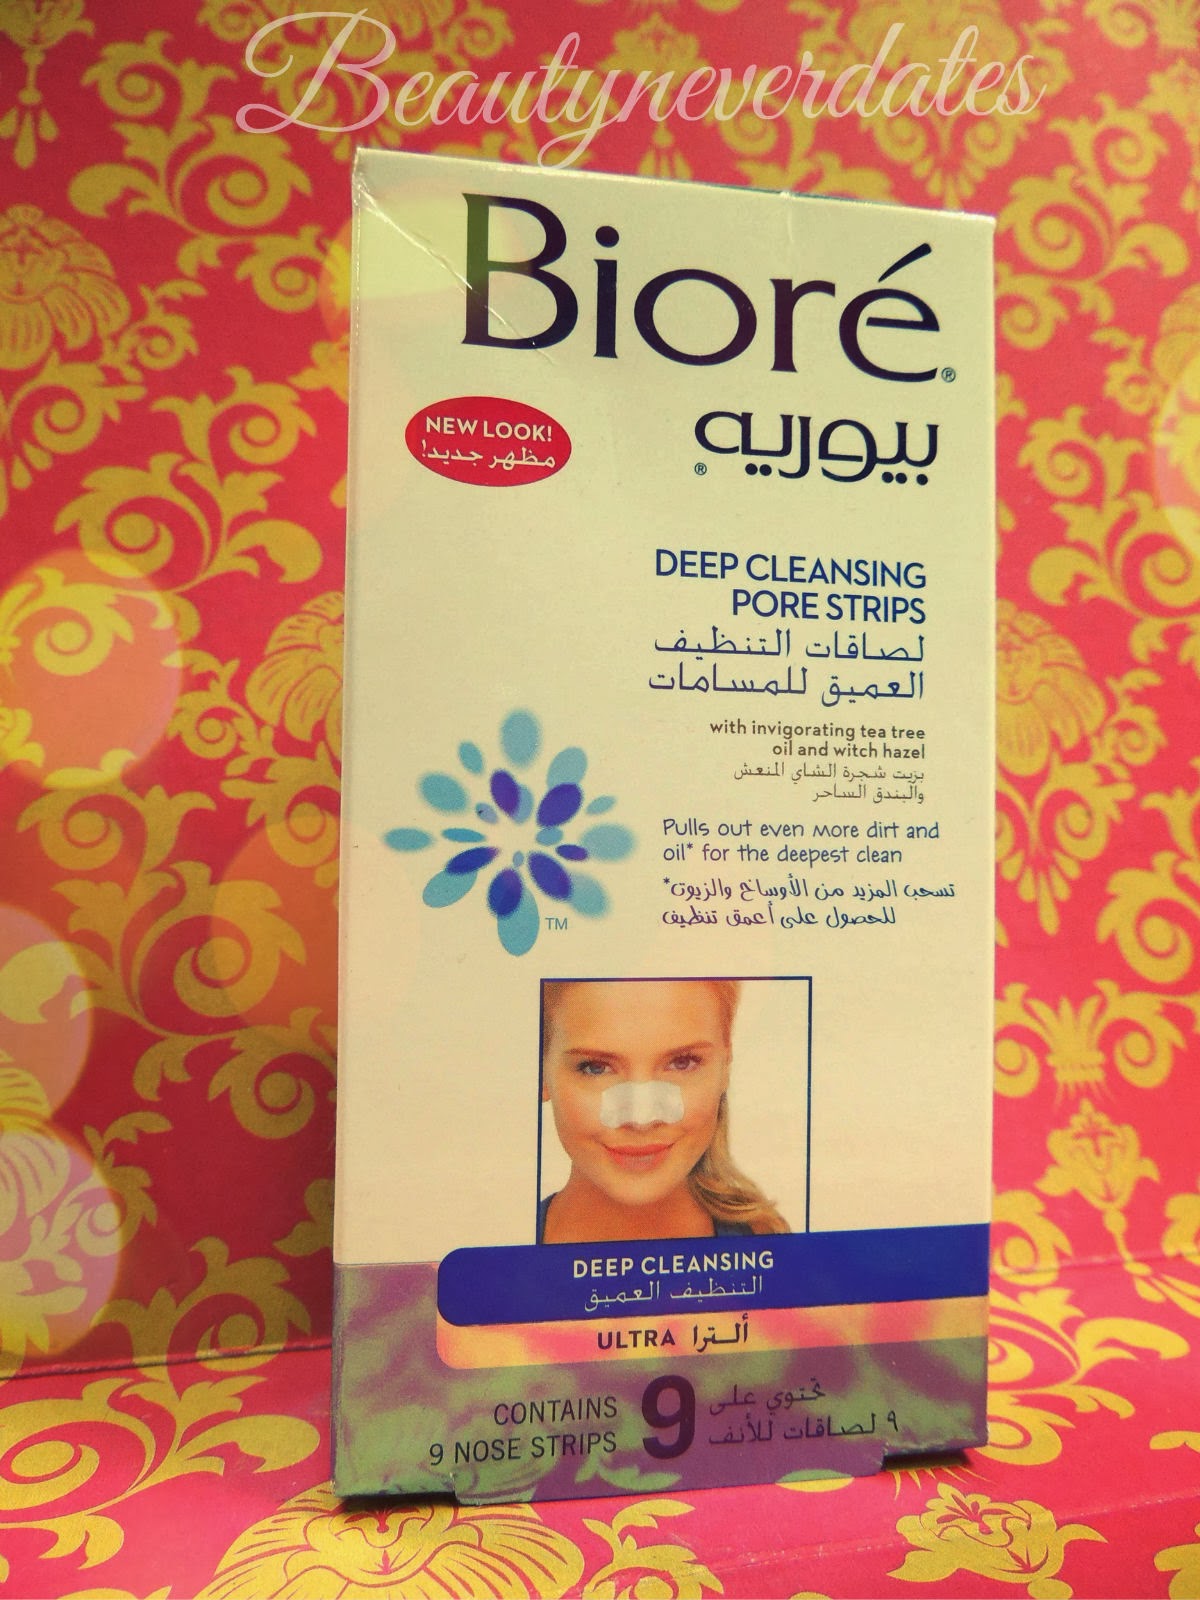   Biore Deep cleansing pore strips – Ultra